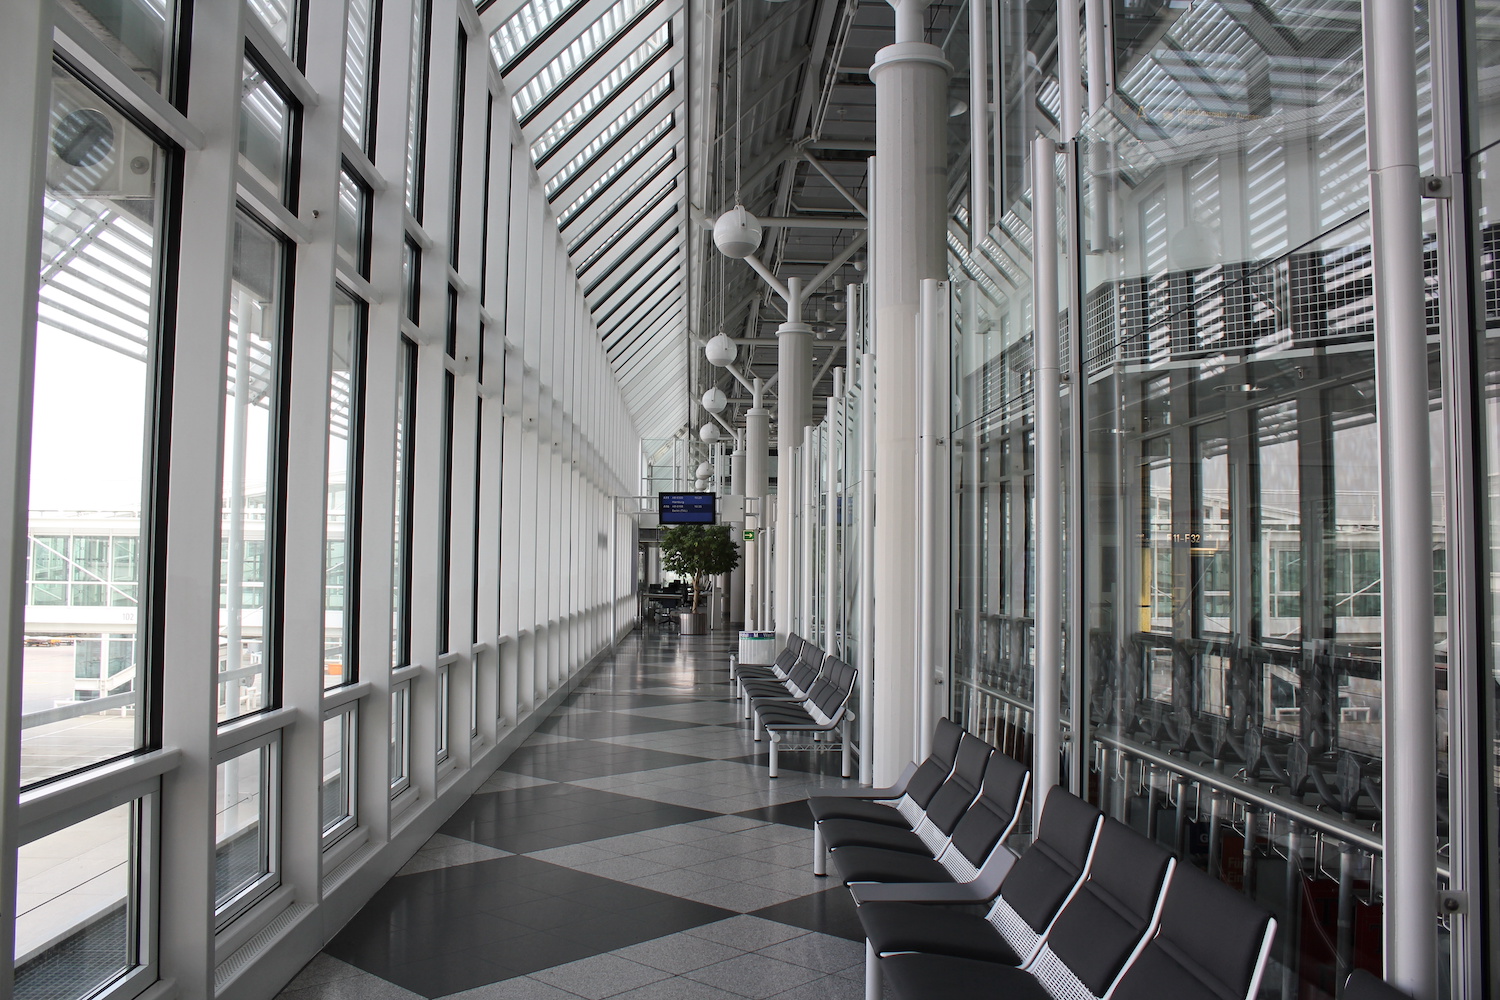 Leerer Abflugbereich am Flughafen München: Aufgrund geringer Passagierzahlen wird das Terminal 1 auf unbestimmte Zeit geschlossen. Foto: Adobe Stock